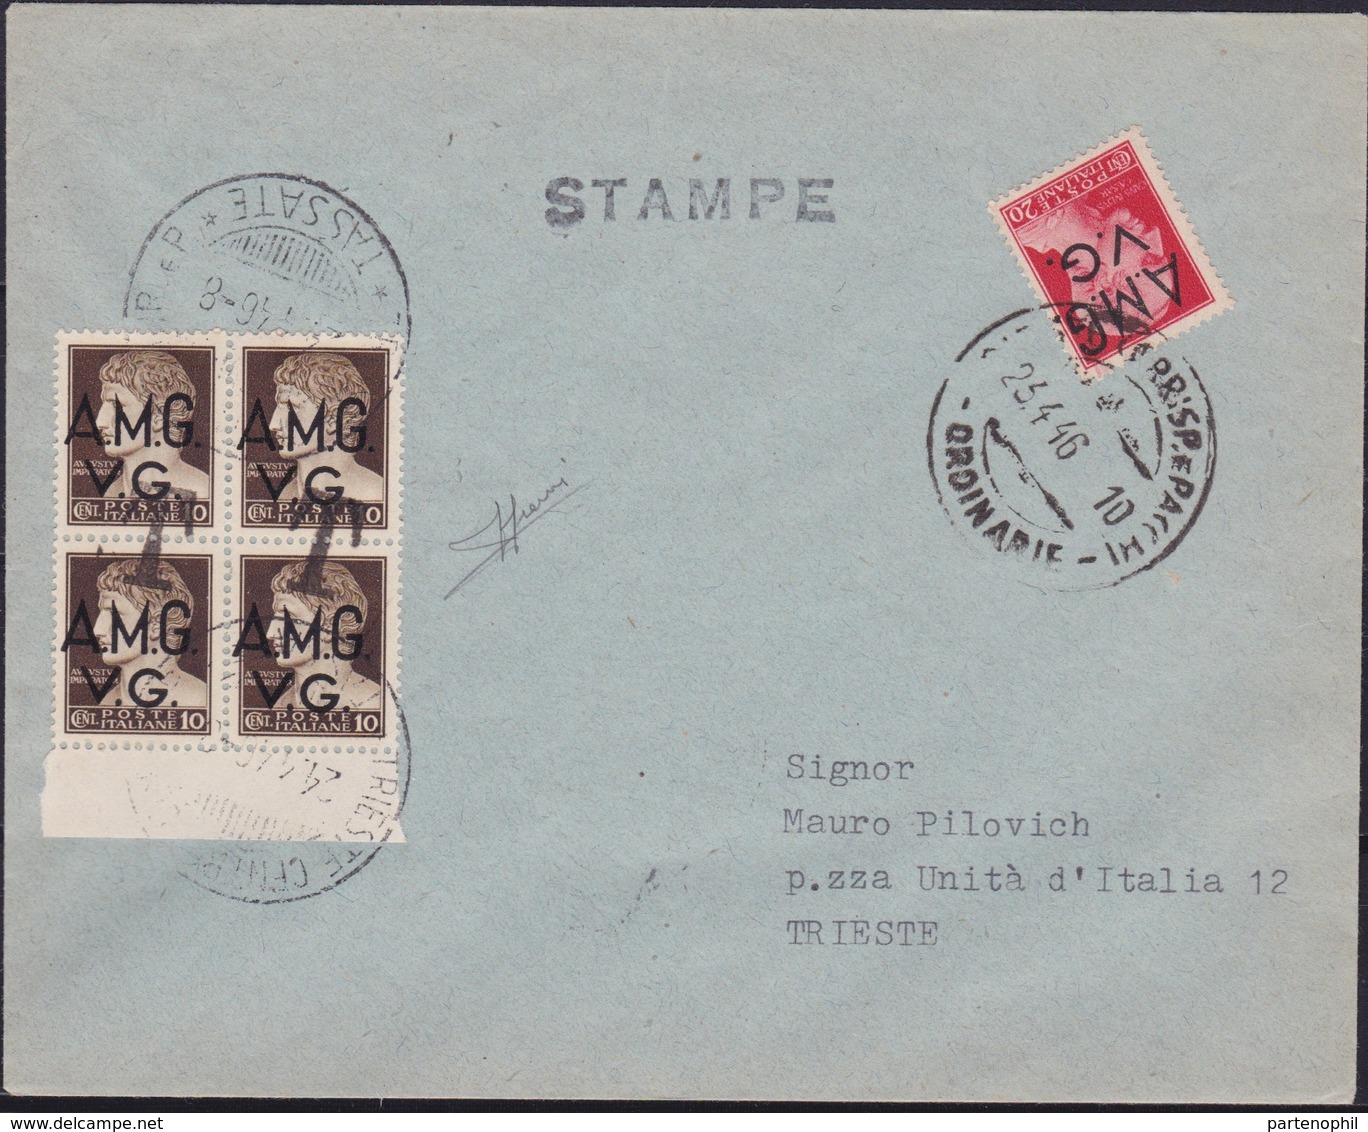 Venezia Giulia - 347 * Lettera Per Stampe Da Trieste Del 23.4.46 Per Città, Affrancata Con Imperiale Soprastampati A.M.G - Poststempel